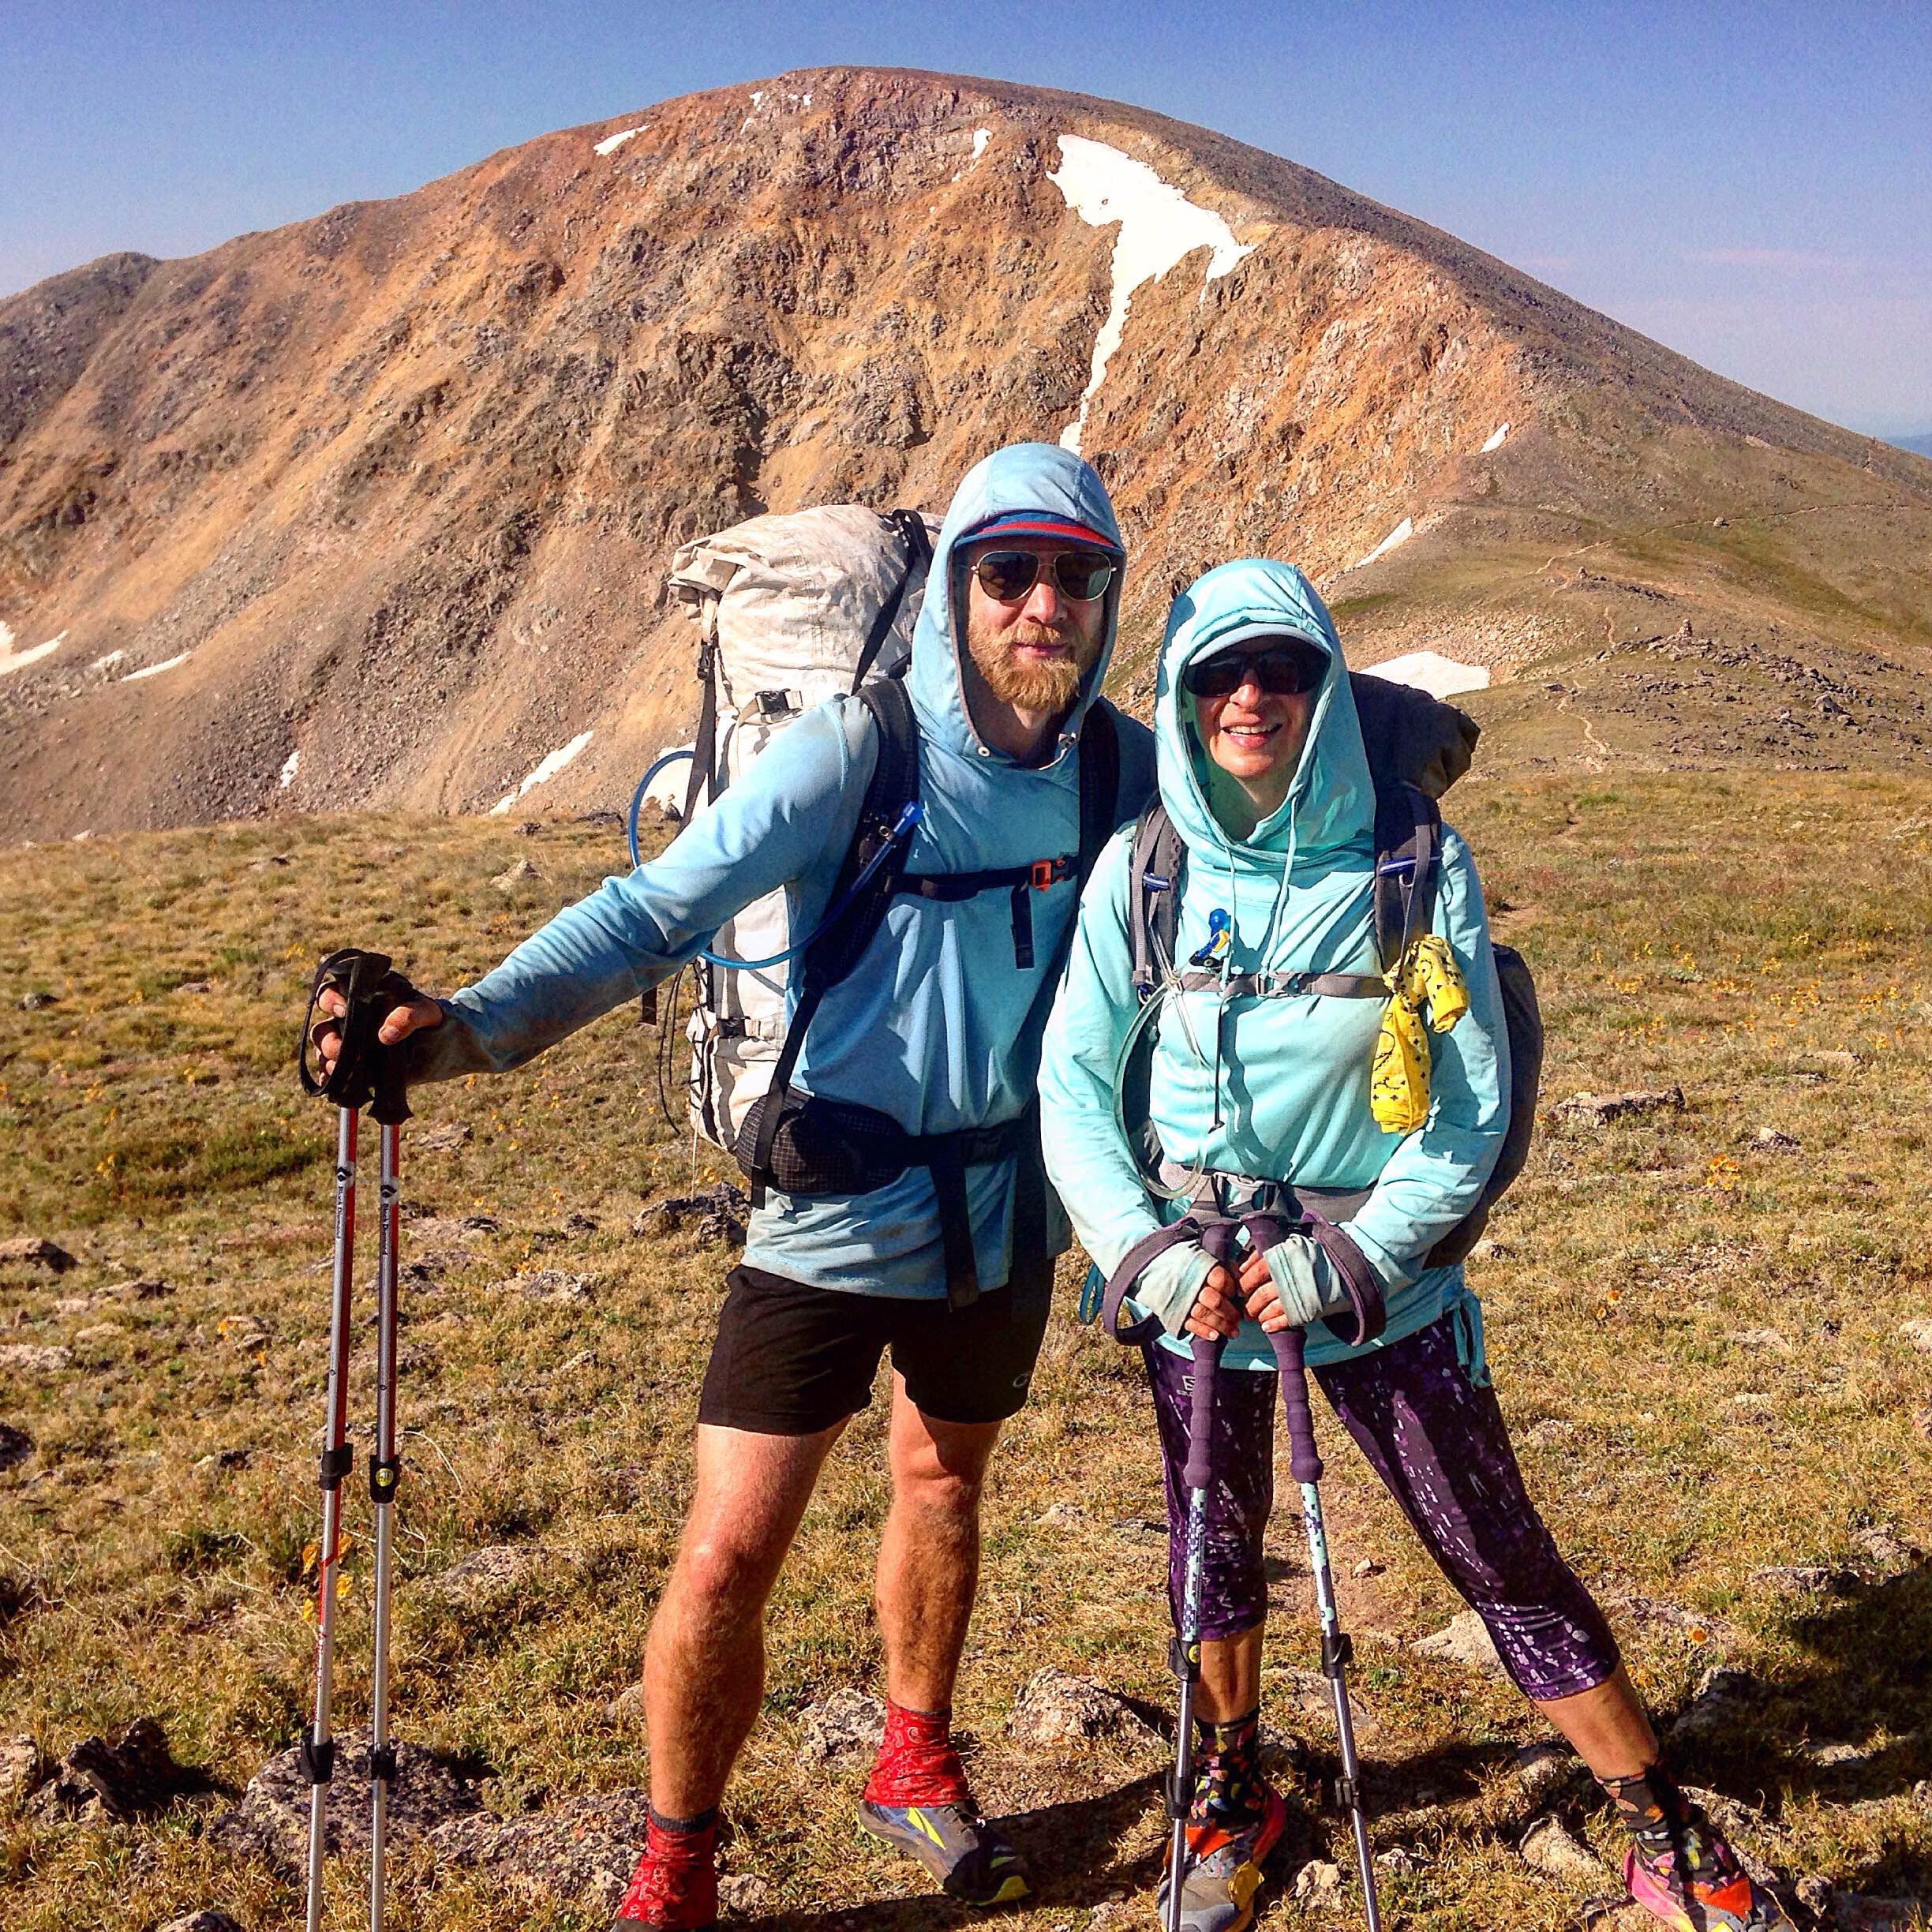 The Thru-Hiker's Diet: PCT hikers devour calories to fuel 100 marathons